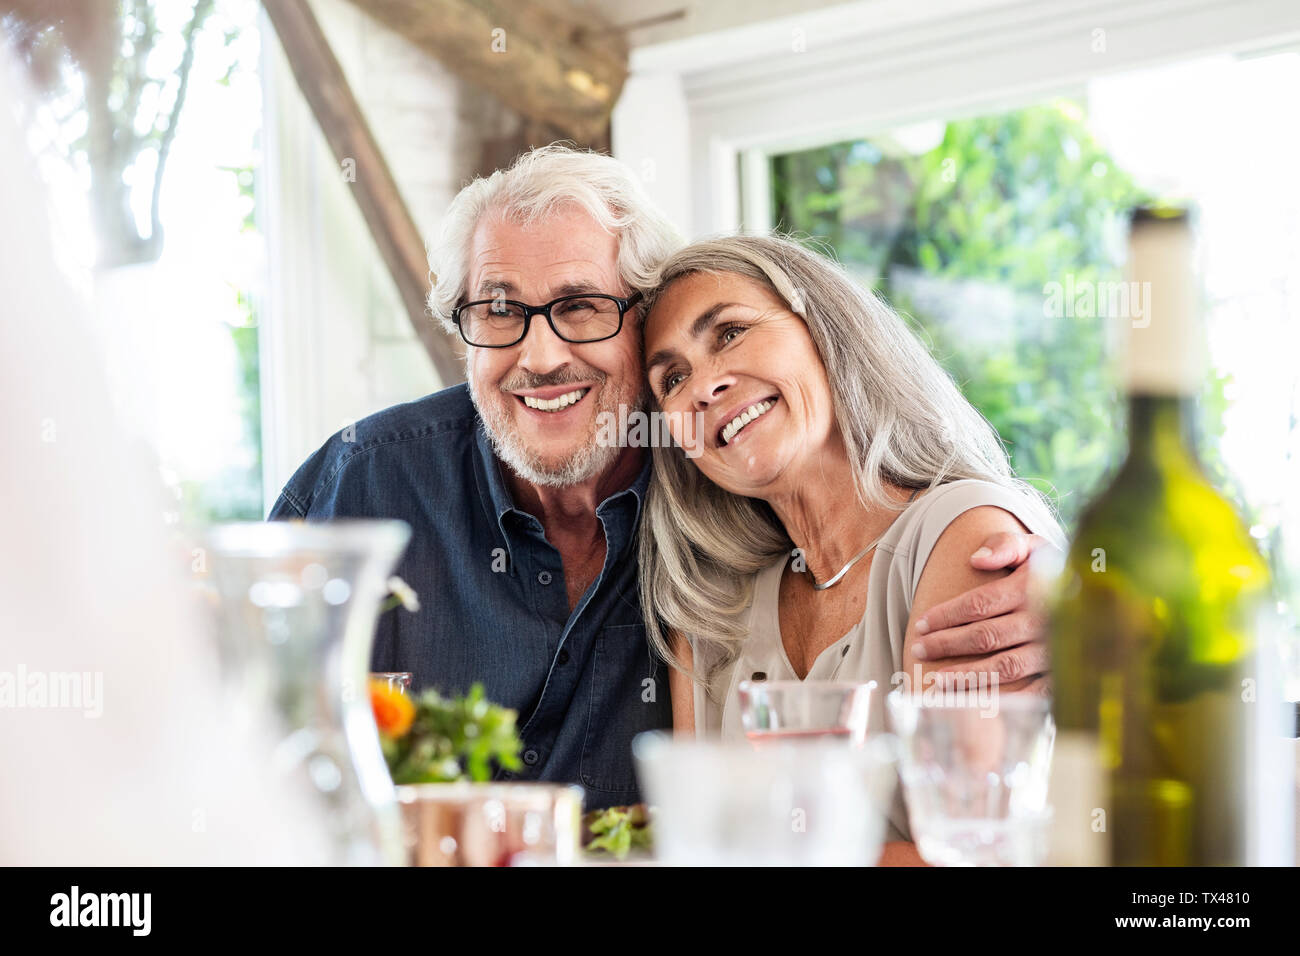 Senior couple celebrating with their family Stock Photo